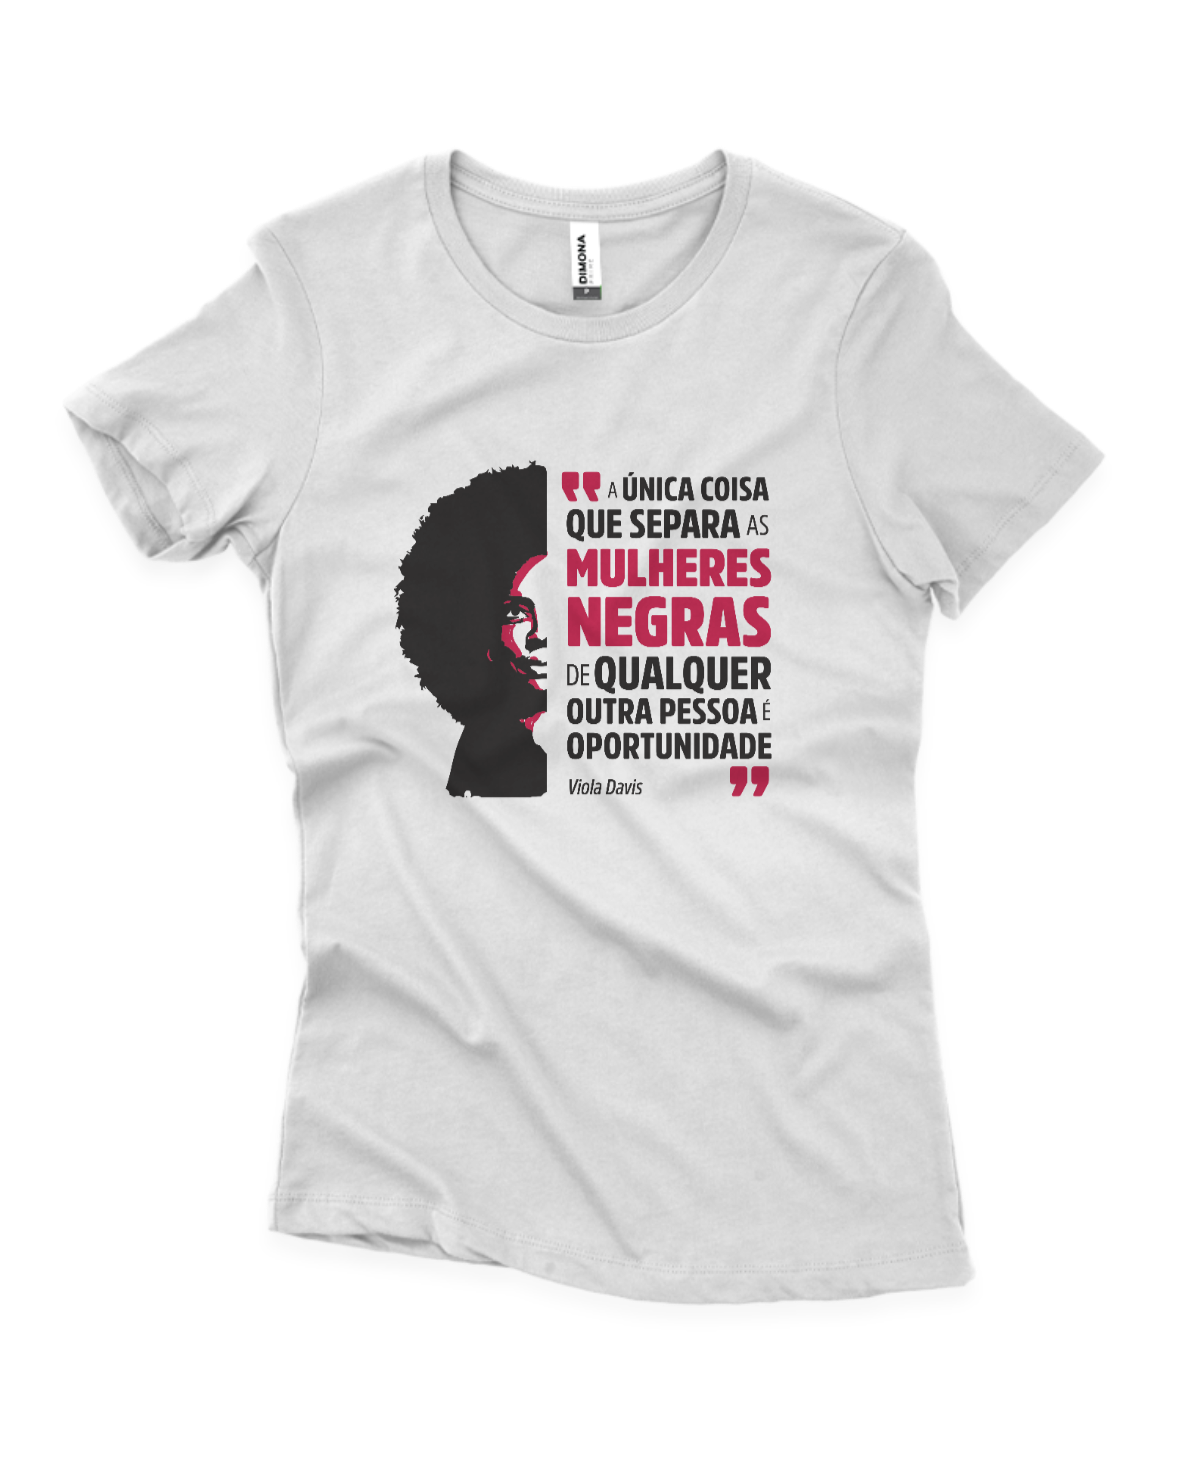 camiseta feminina branca com ilustração da Viola Davis e a frase "a única coisa que separa as mulheres negras de qualquer outra pessoa é oportunidade"